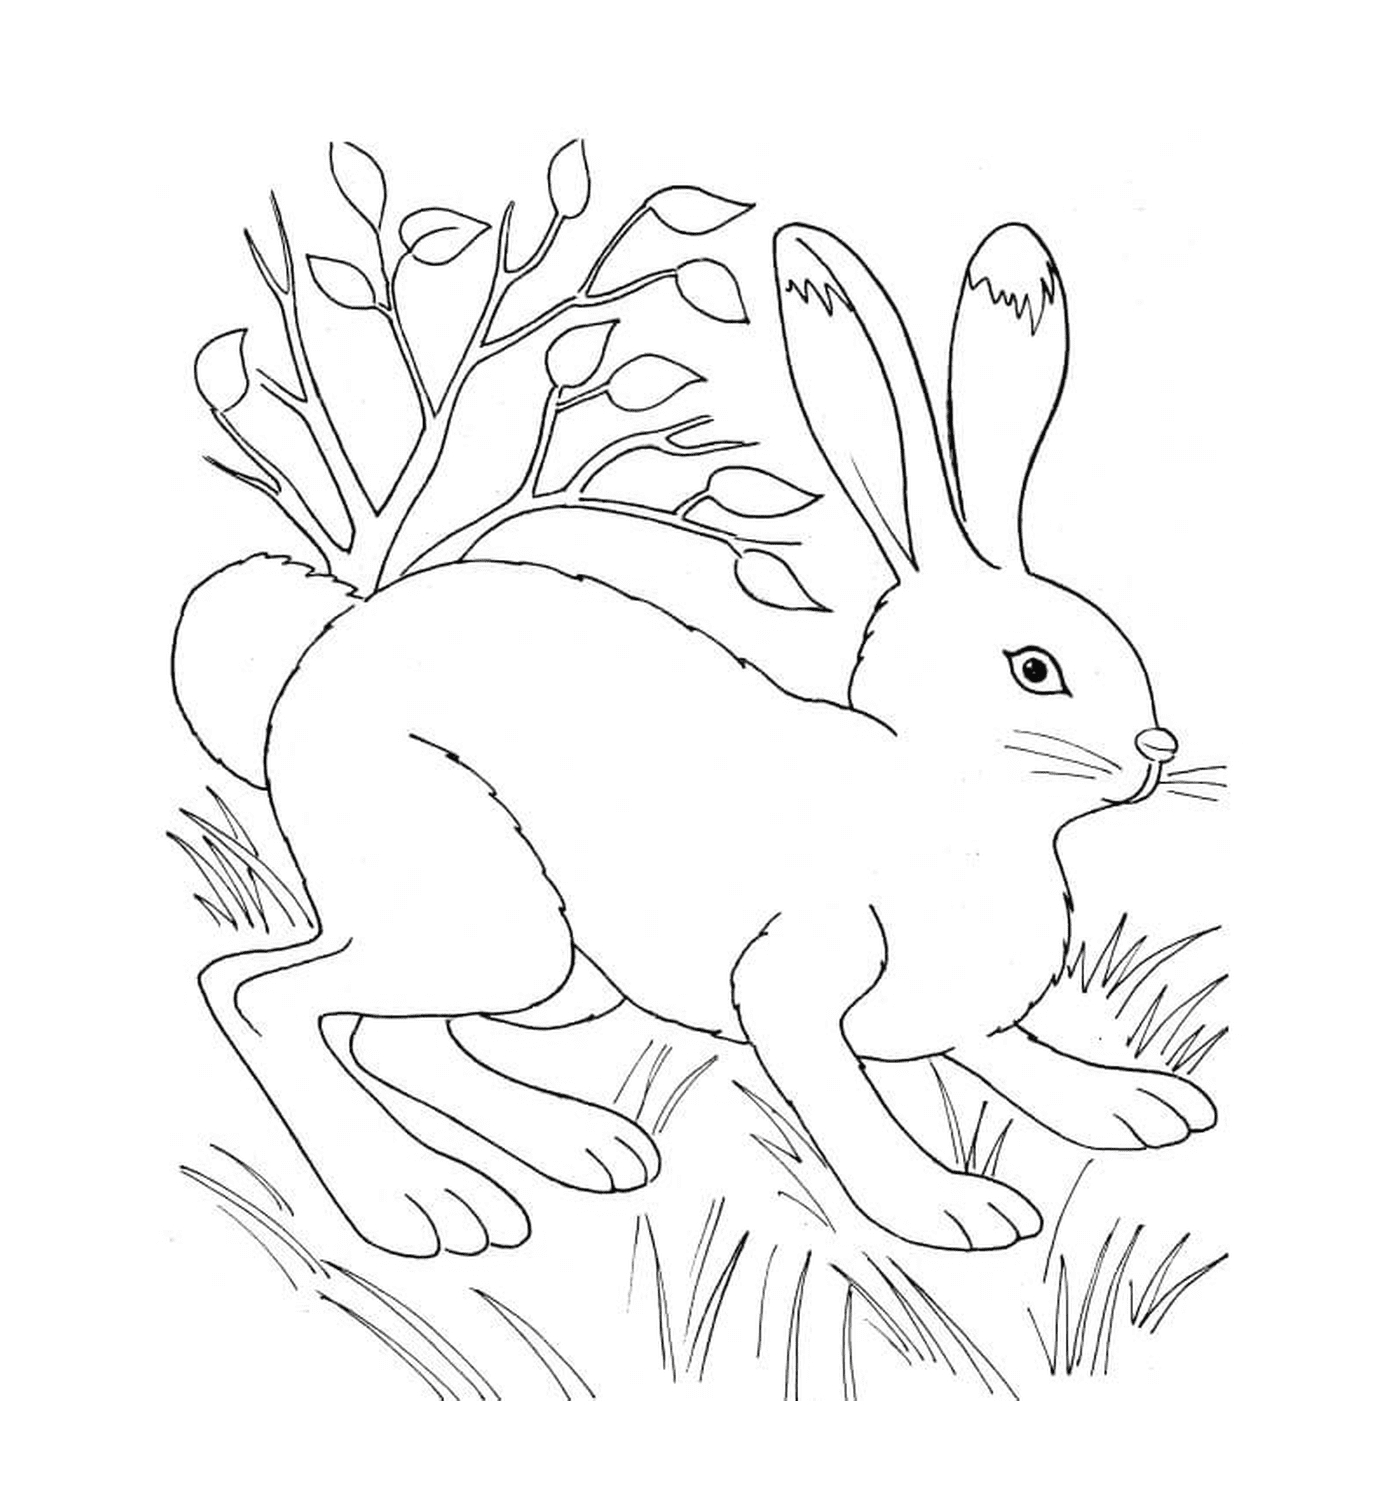  Rabbit in nature near vegetation 